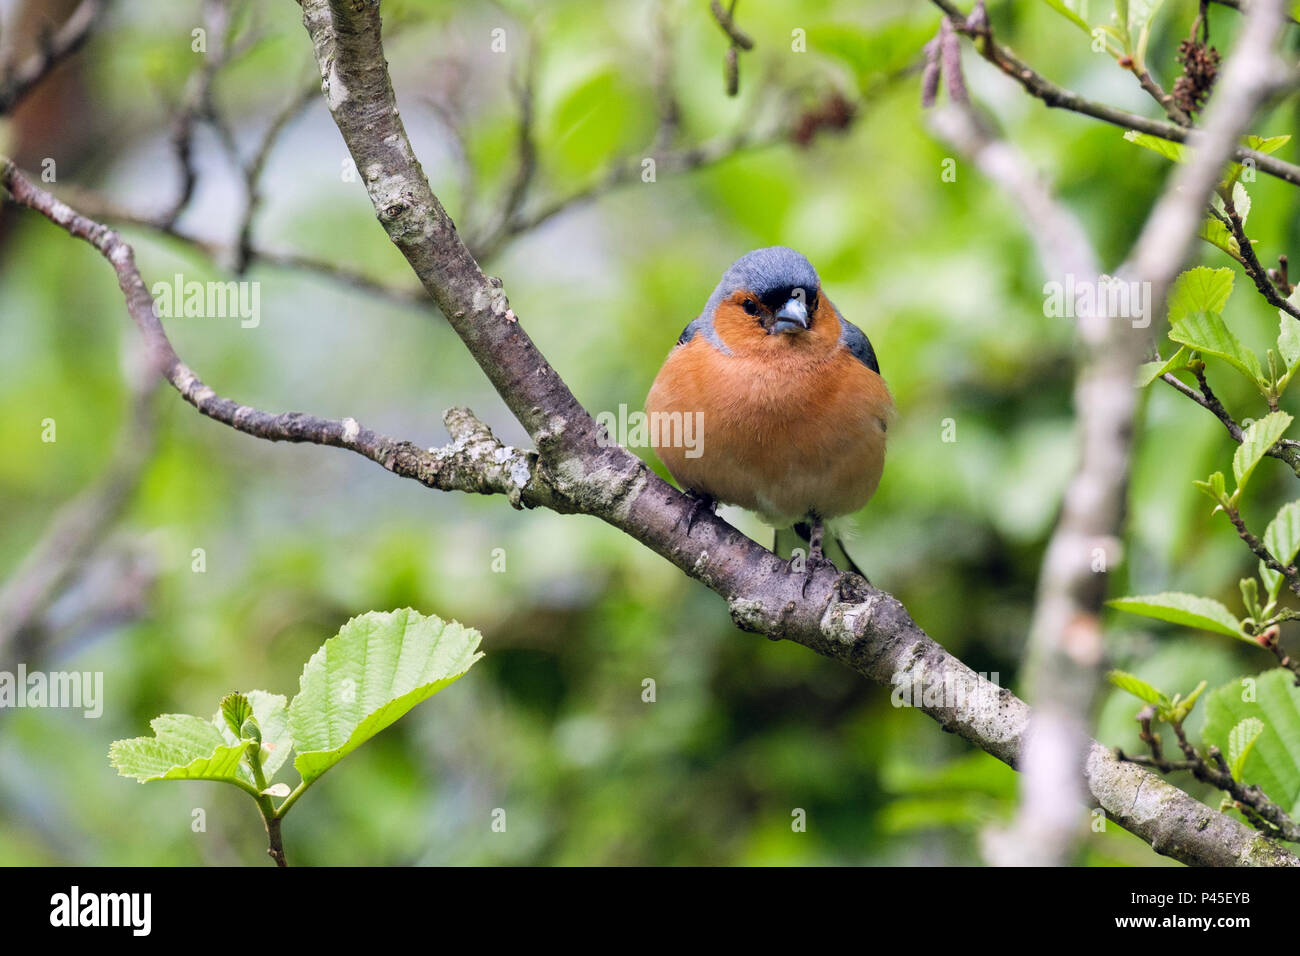 La nature d'un homme (Fringilla coelebs Chaffinch commun) le plumage des oiseaux au printemps sur un Beech tree branch dans une haie de jardin. Pays de Galles, Royaume-Uni, Angleterre Banque D'Images